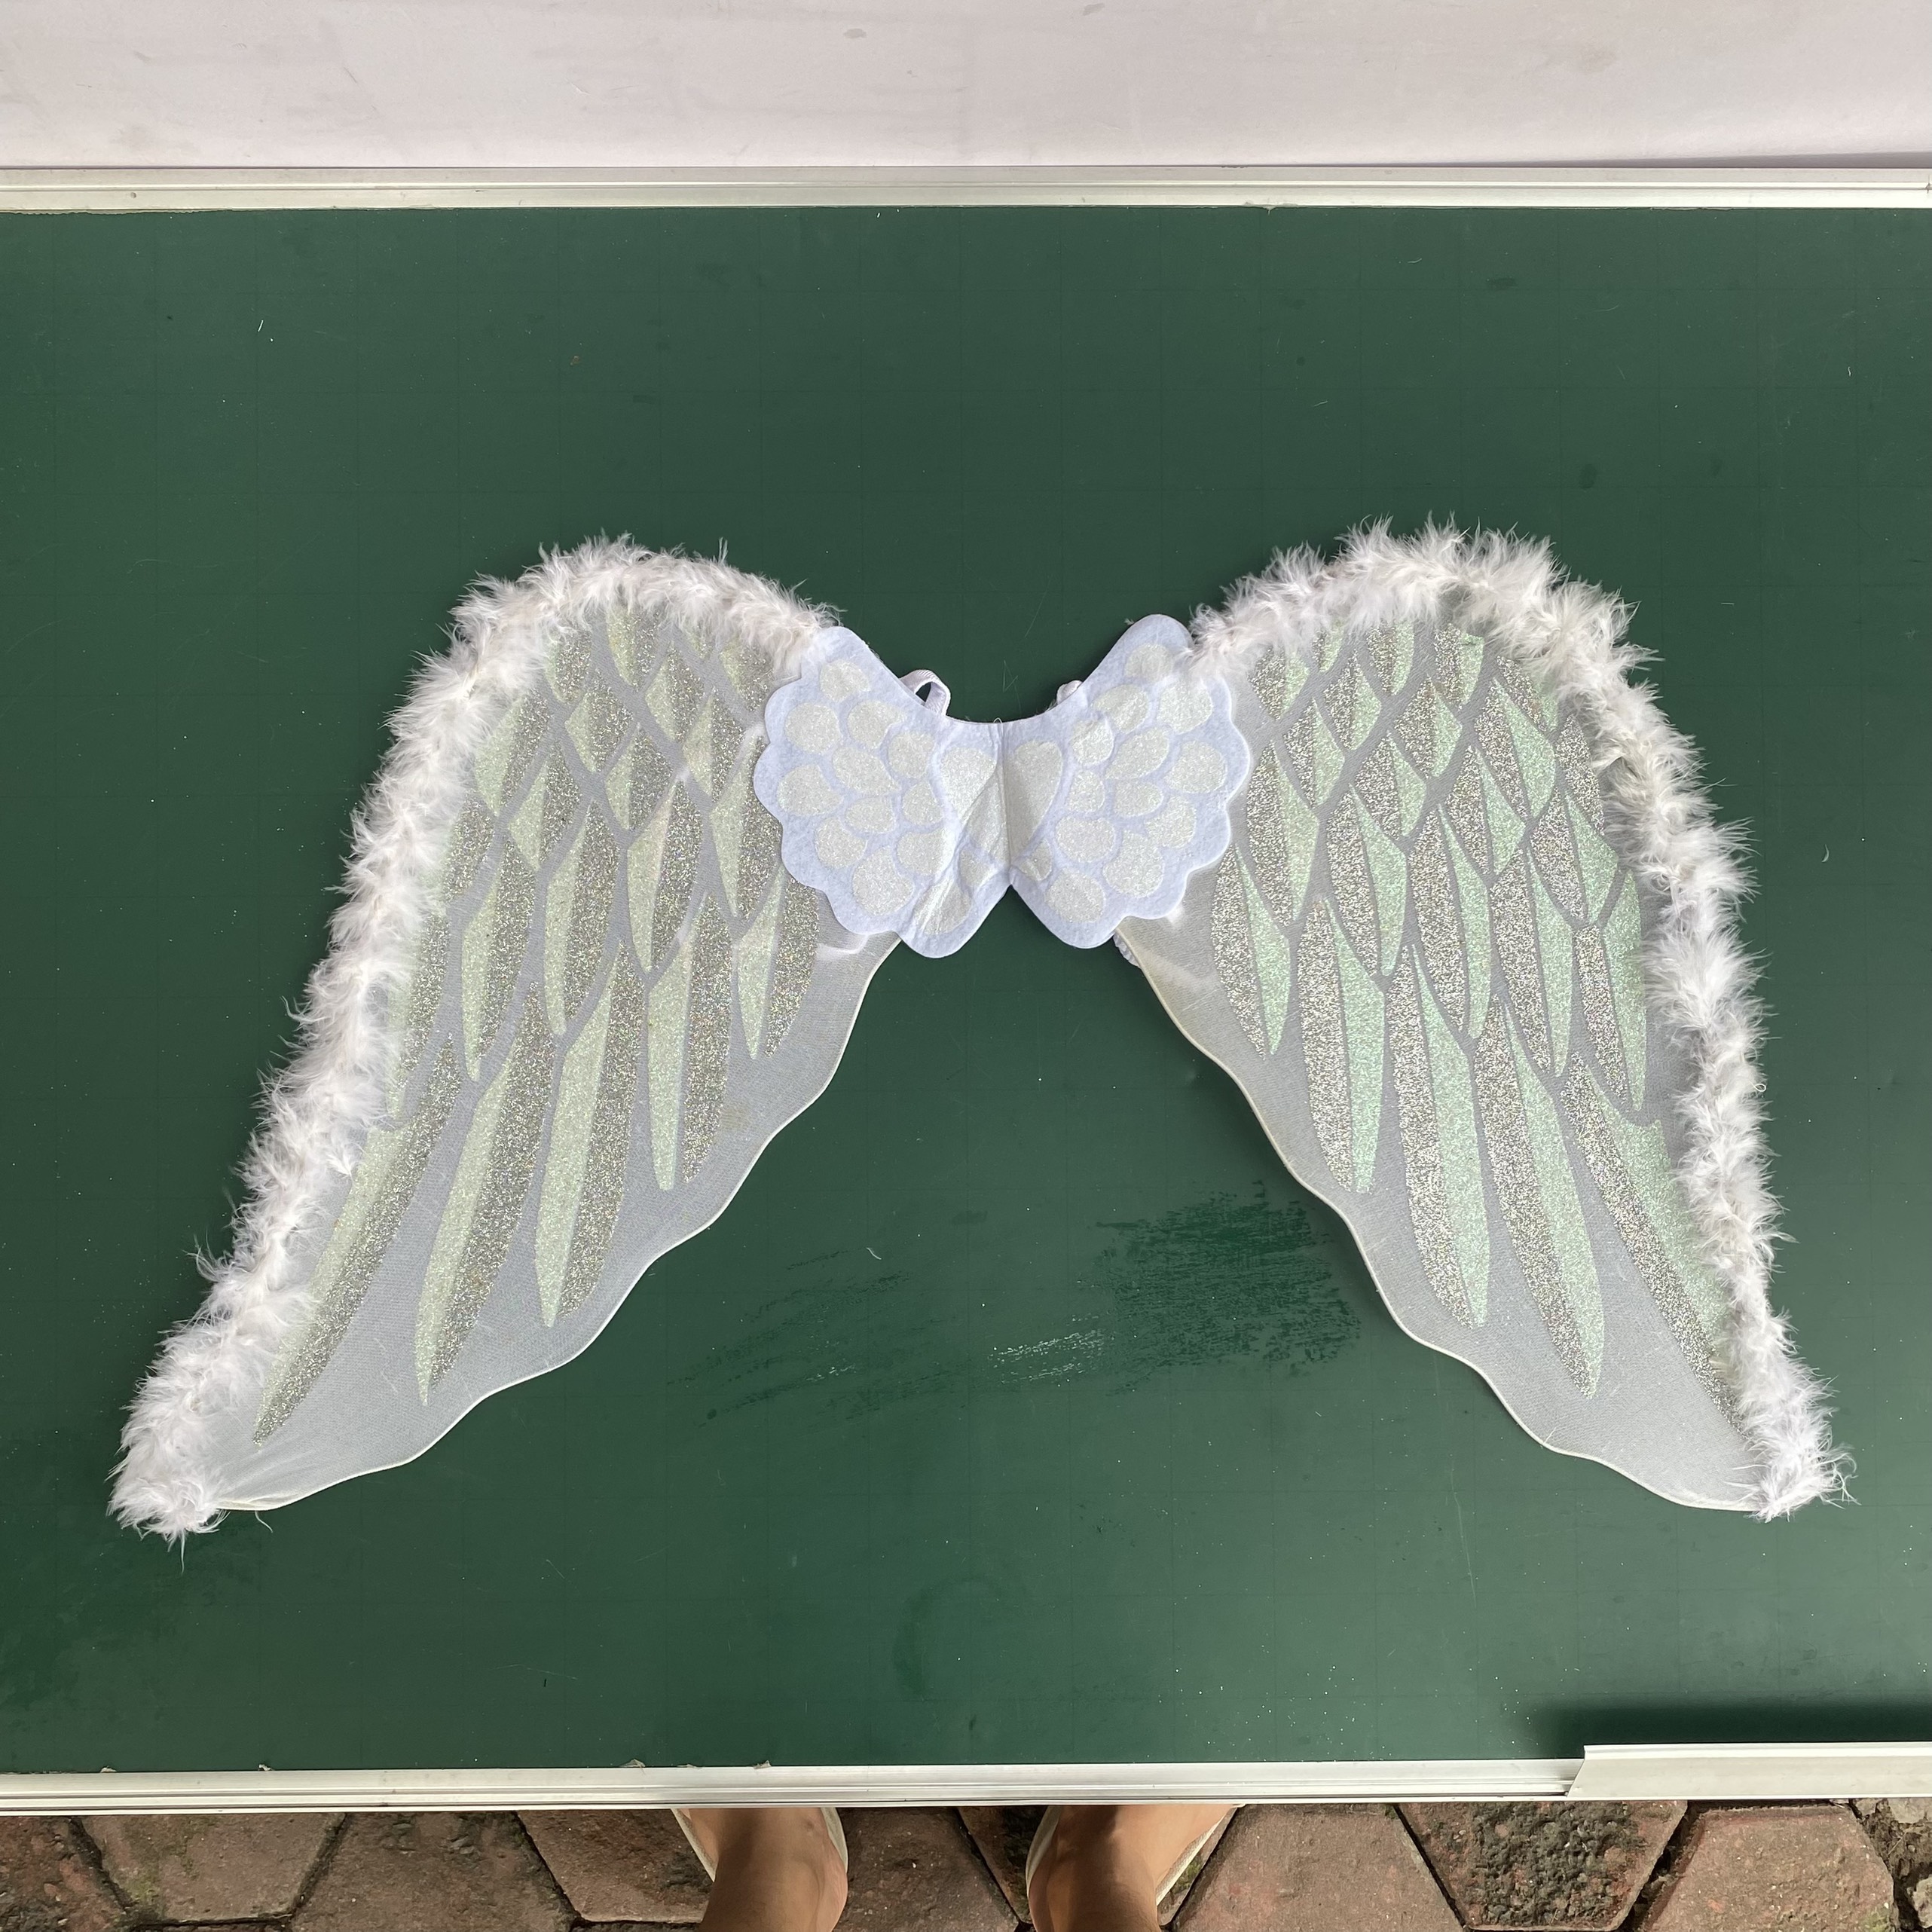 Cánh thiên thần airy wing dress up angel wing dành Cho Bé chơi trung thu, Hóa Trang Halloween